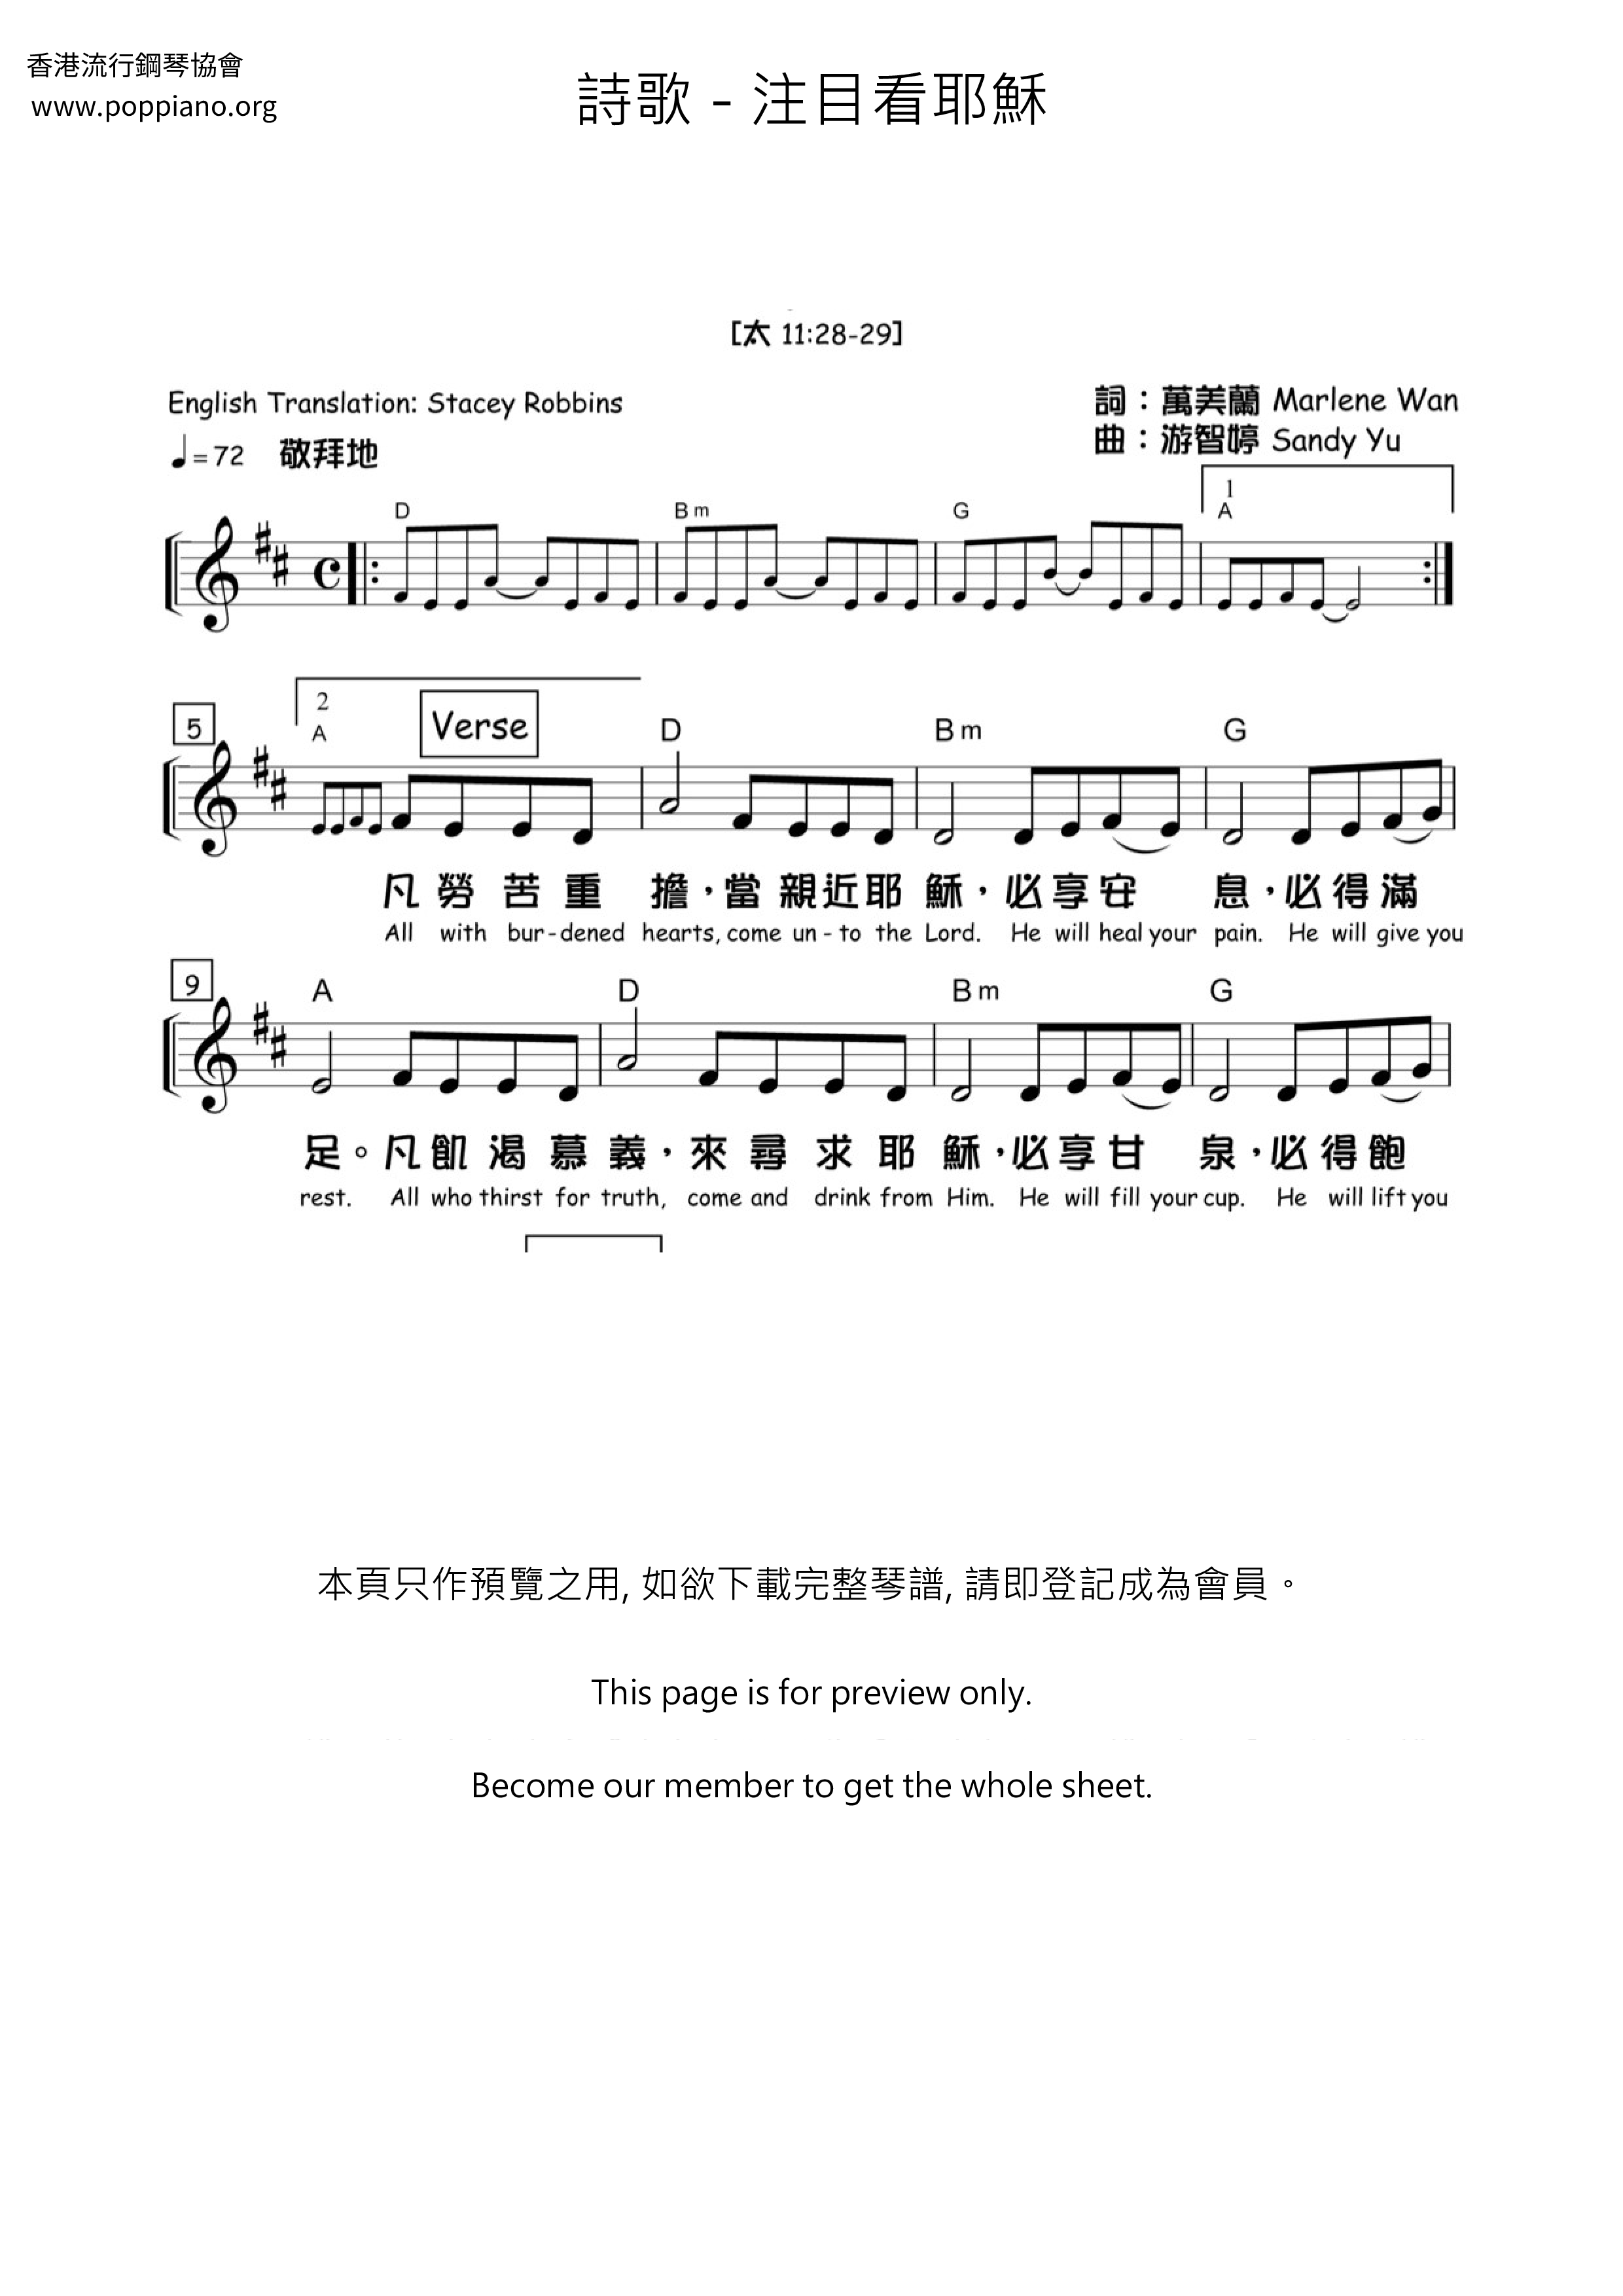 诗歌 注目看耶稣琴谱 五线谱pdf 香港流行钢琴协会琴谱下载